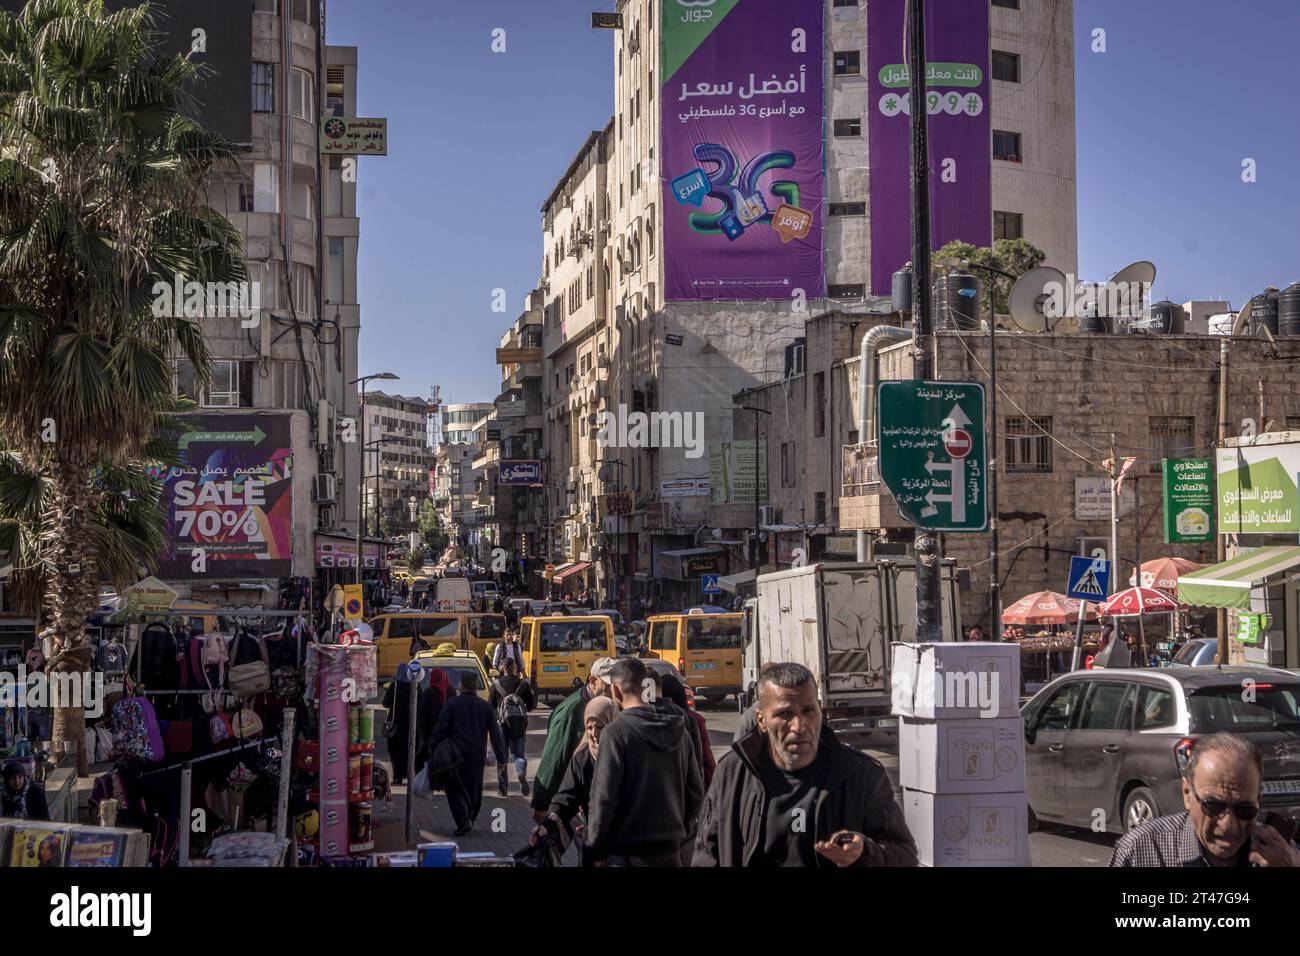 La rue, la circulation, les bâtiments et le peuple palestinien dans le centre-ville de Ramallah, la capitale de l'autonomie palestinienne (Palestine) en Cisjordanie. Banque D'Images